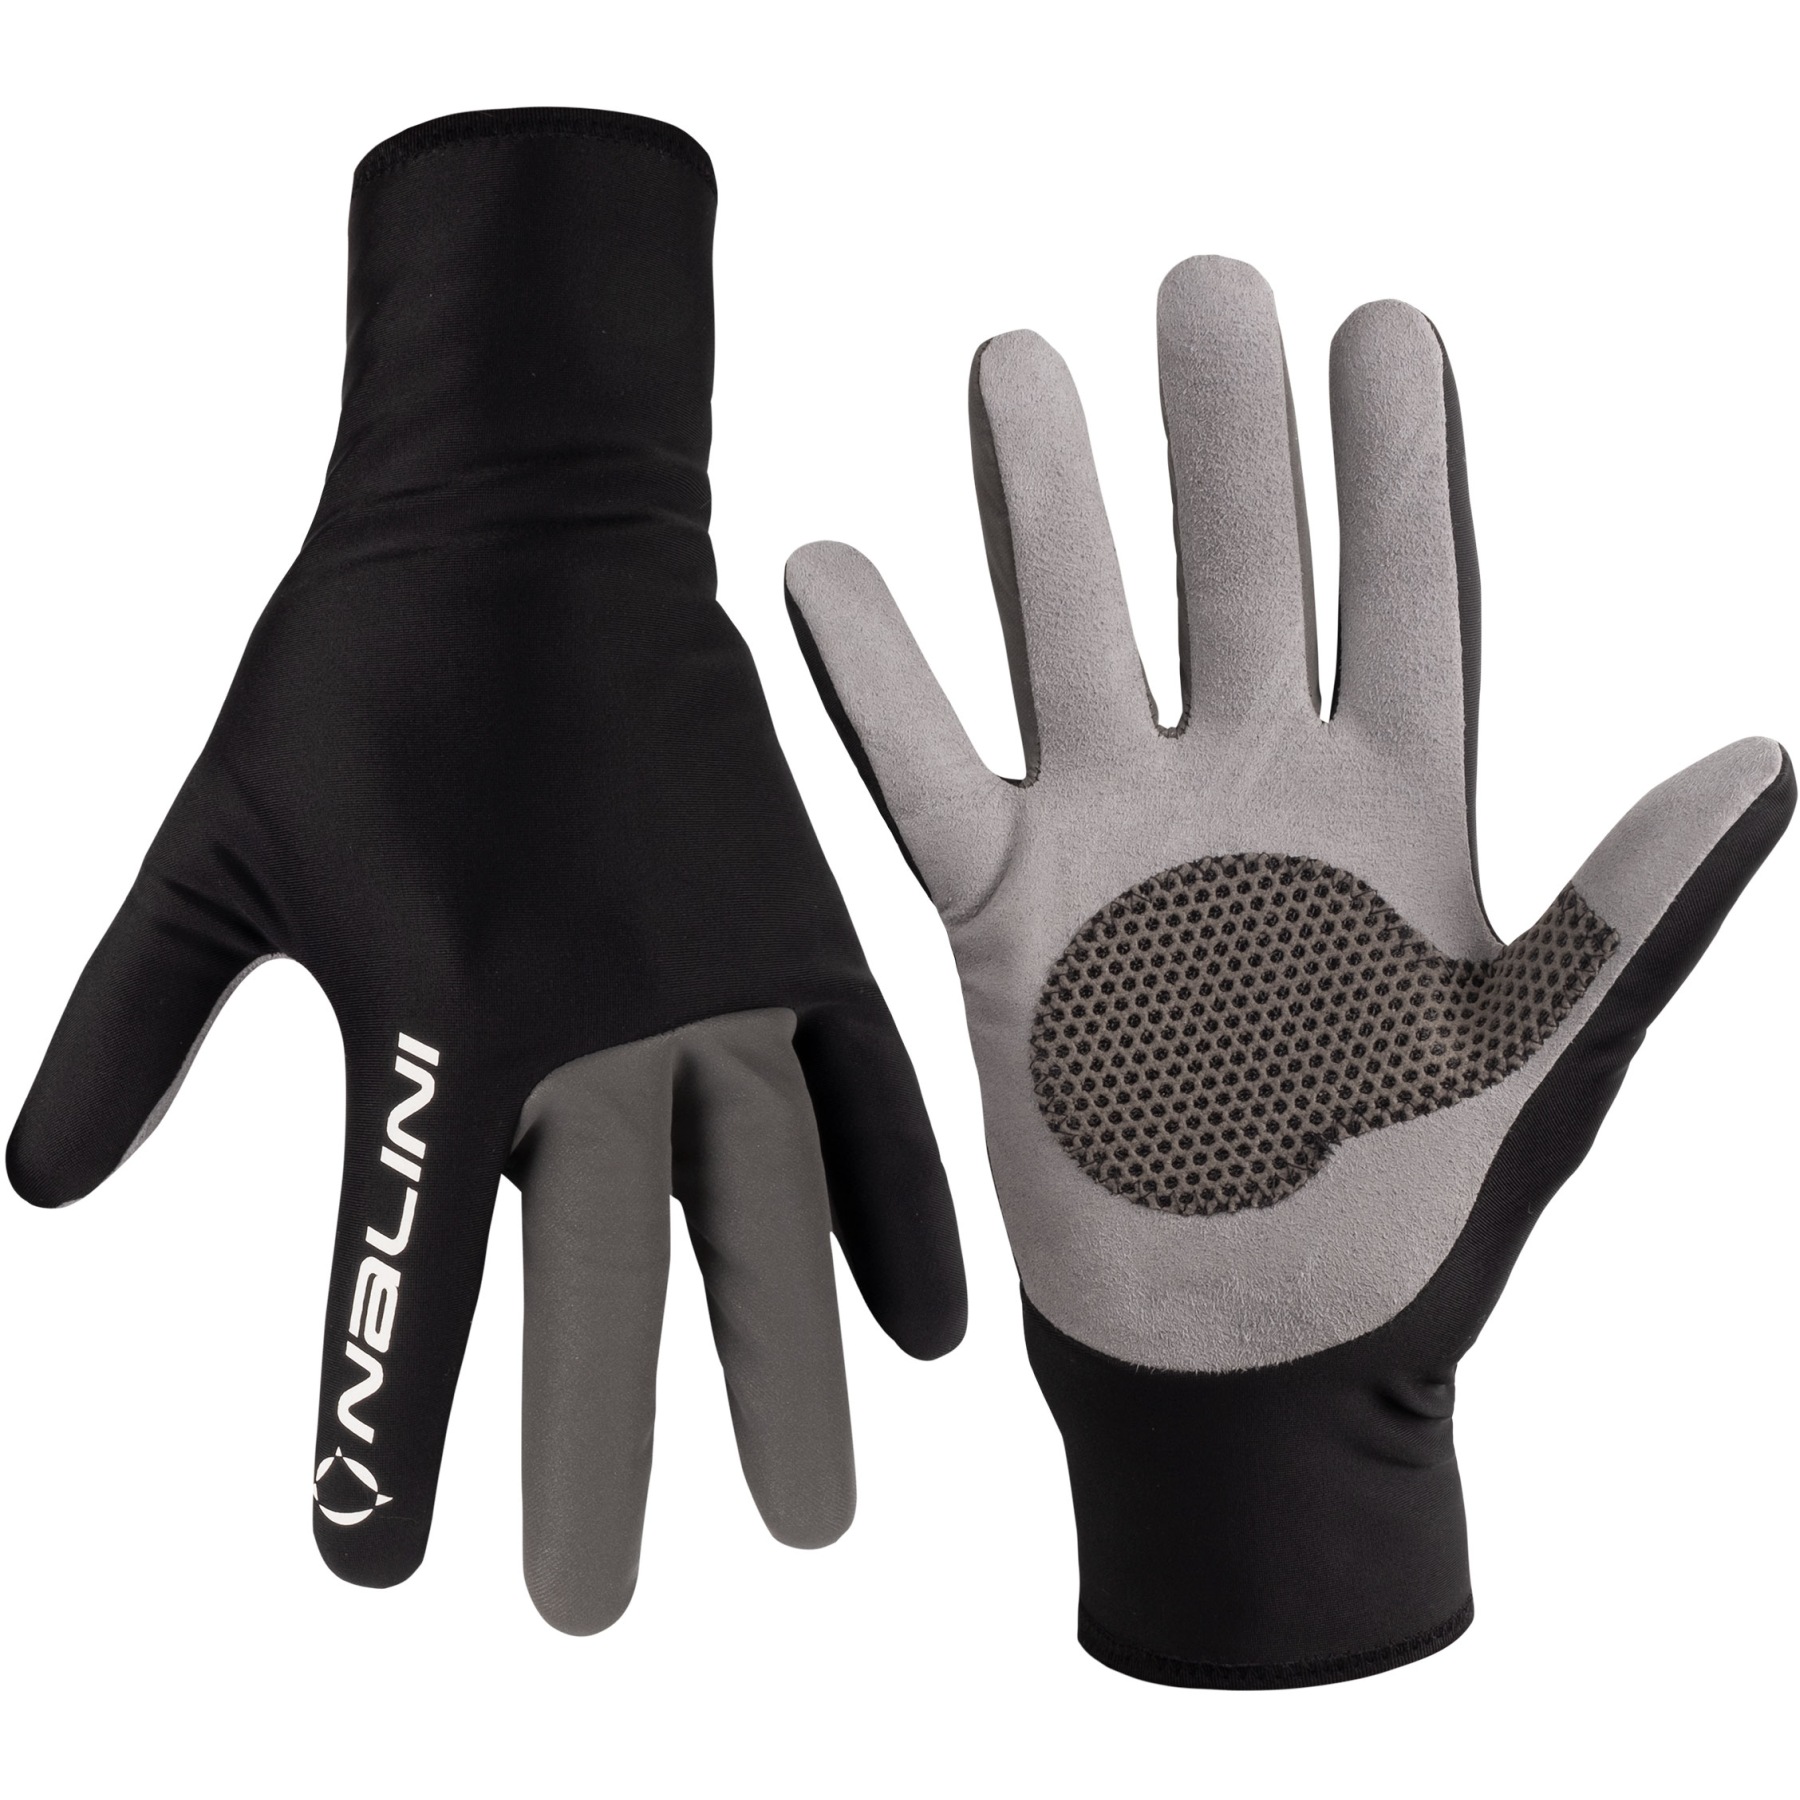 Produktbild von Nalini Reflex Winter Handschuhe - schwarz 4000